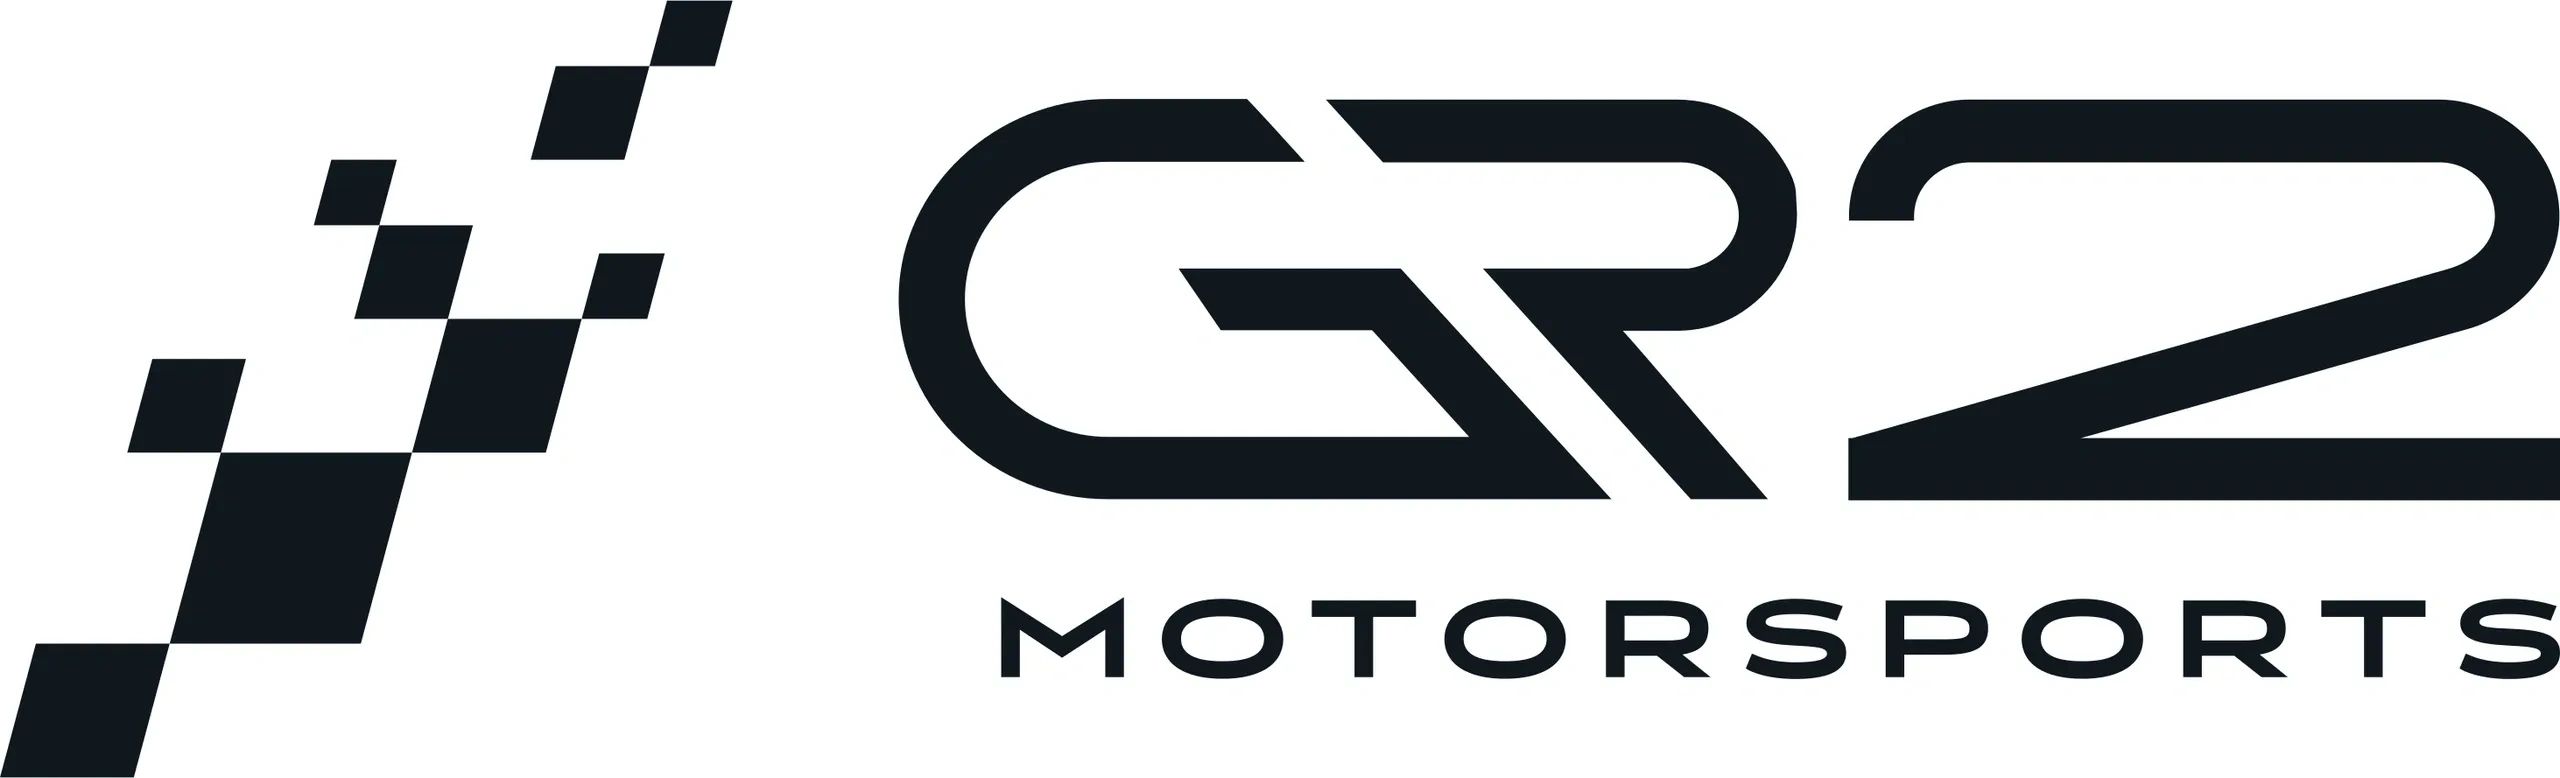 GR2 logo
